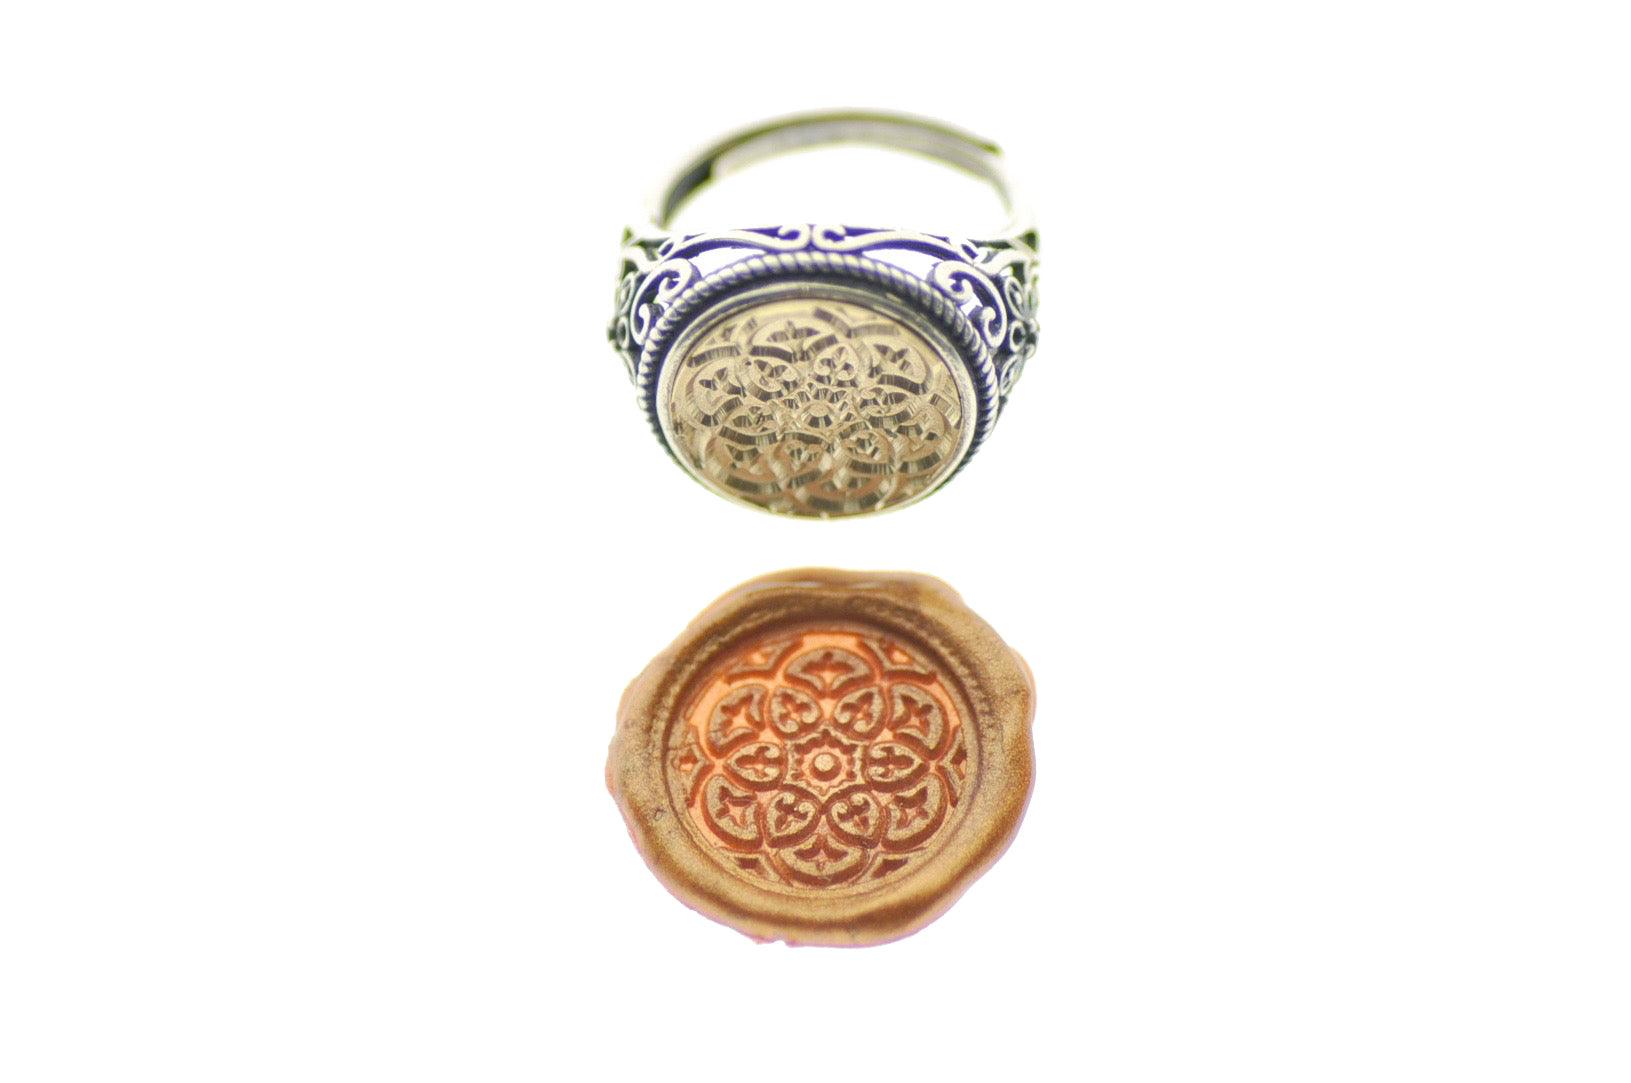 Damask Kaleidoscope Signet Ring - Backtozero B20 - 14f, 14mm, 14mm ring, accessory, Damask, Deco, Decorative, fancy, her, jewelry, ring, signet ring, size 10, size 5, size 6, size 7, size 8, size 9, wax seal, wax seal stamp